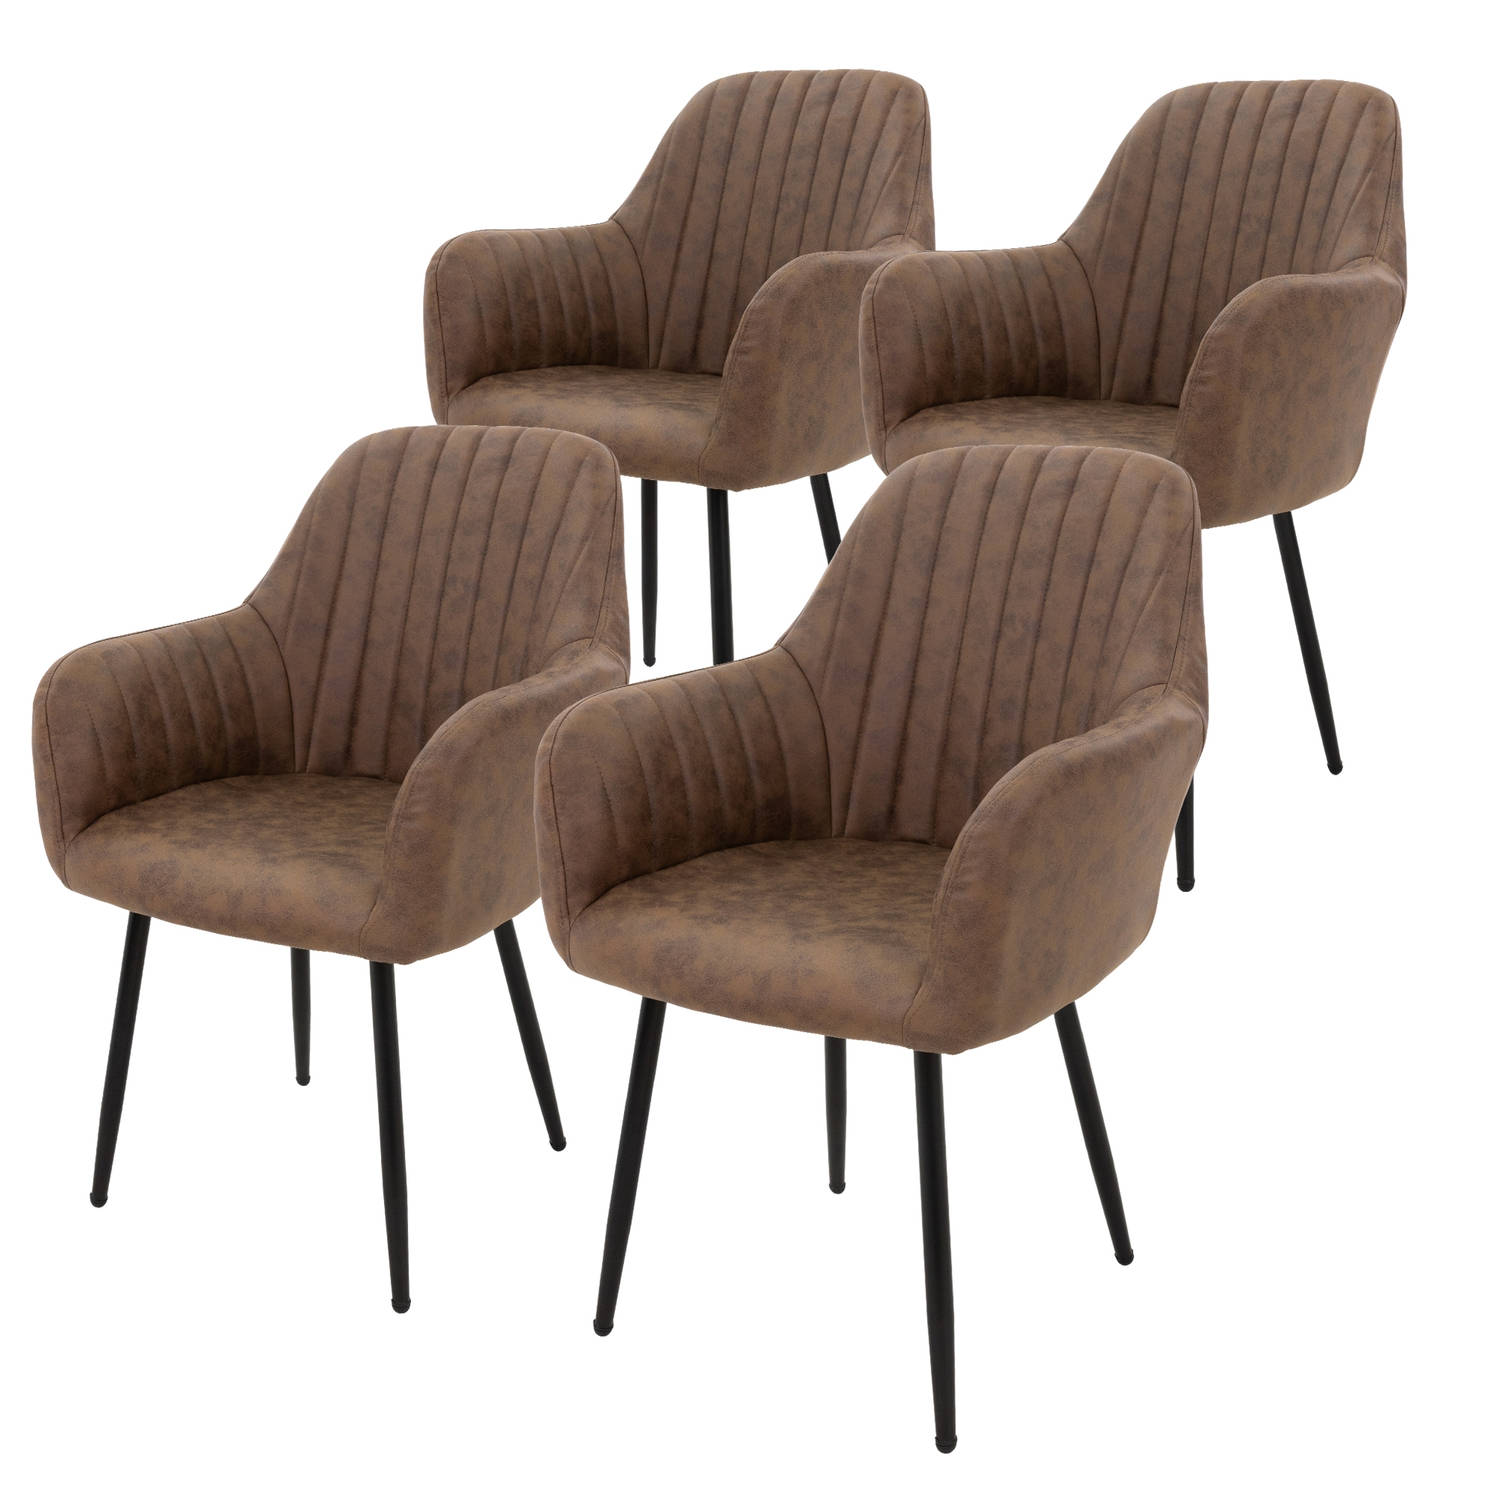 ML-Design set van 4 eetkamerstoelen met rugleuning en armleuningen, bruin, keukenstoelen met microvezelbekleding fluweellook, gestoffeerde stoelen met metalen poten, ergonomische s